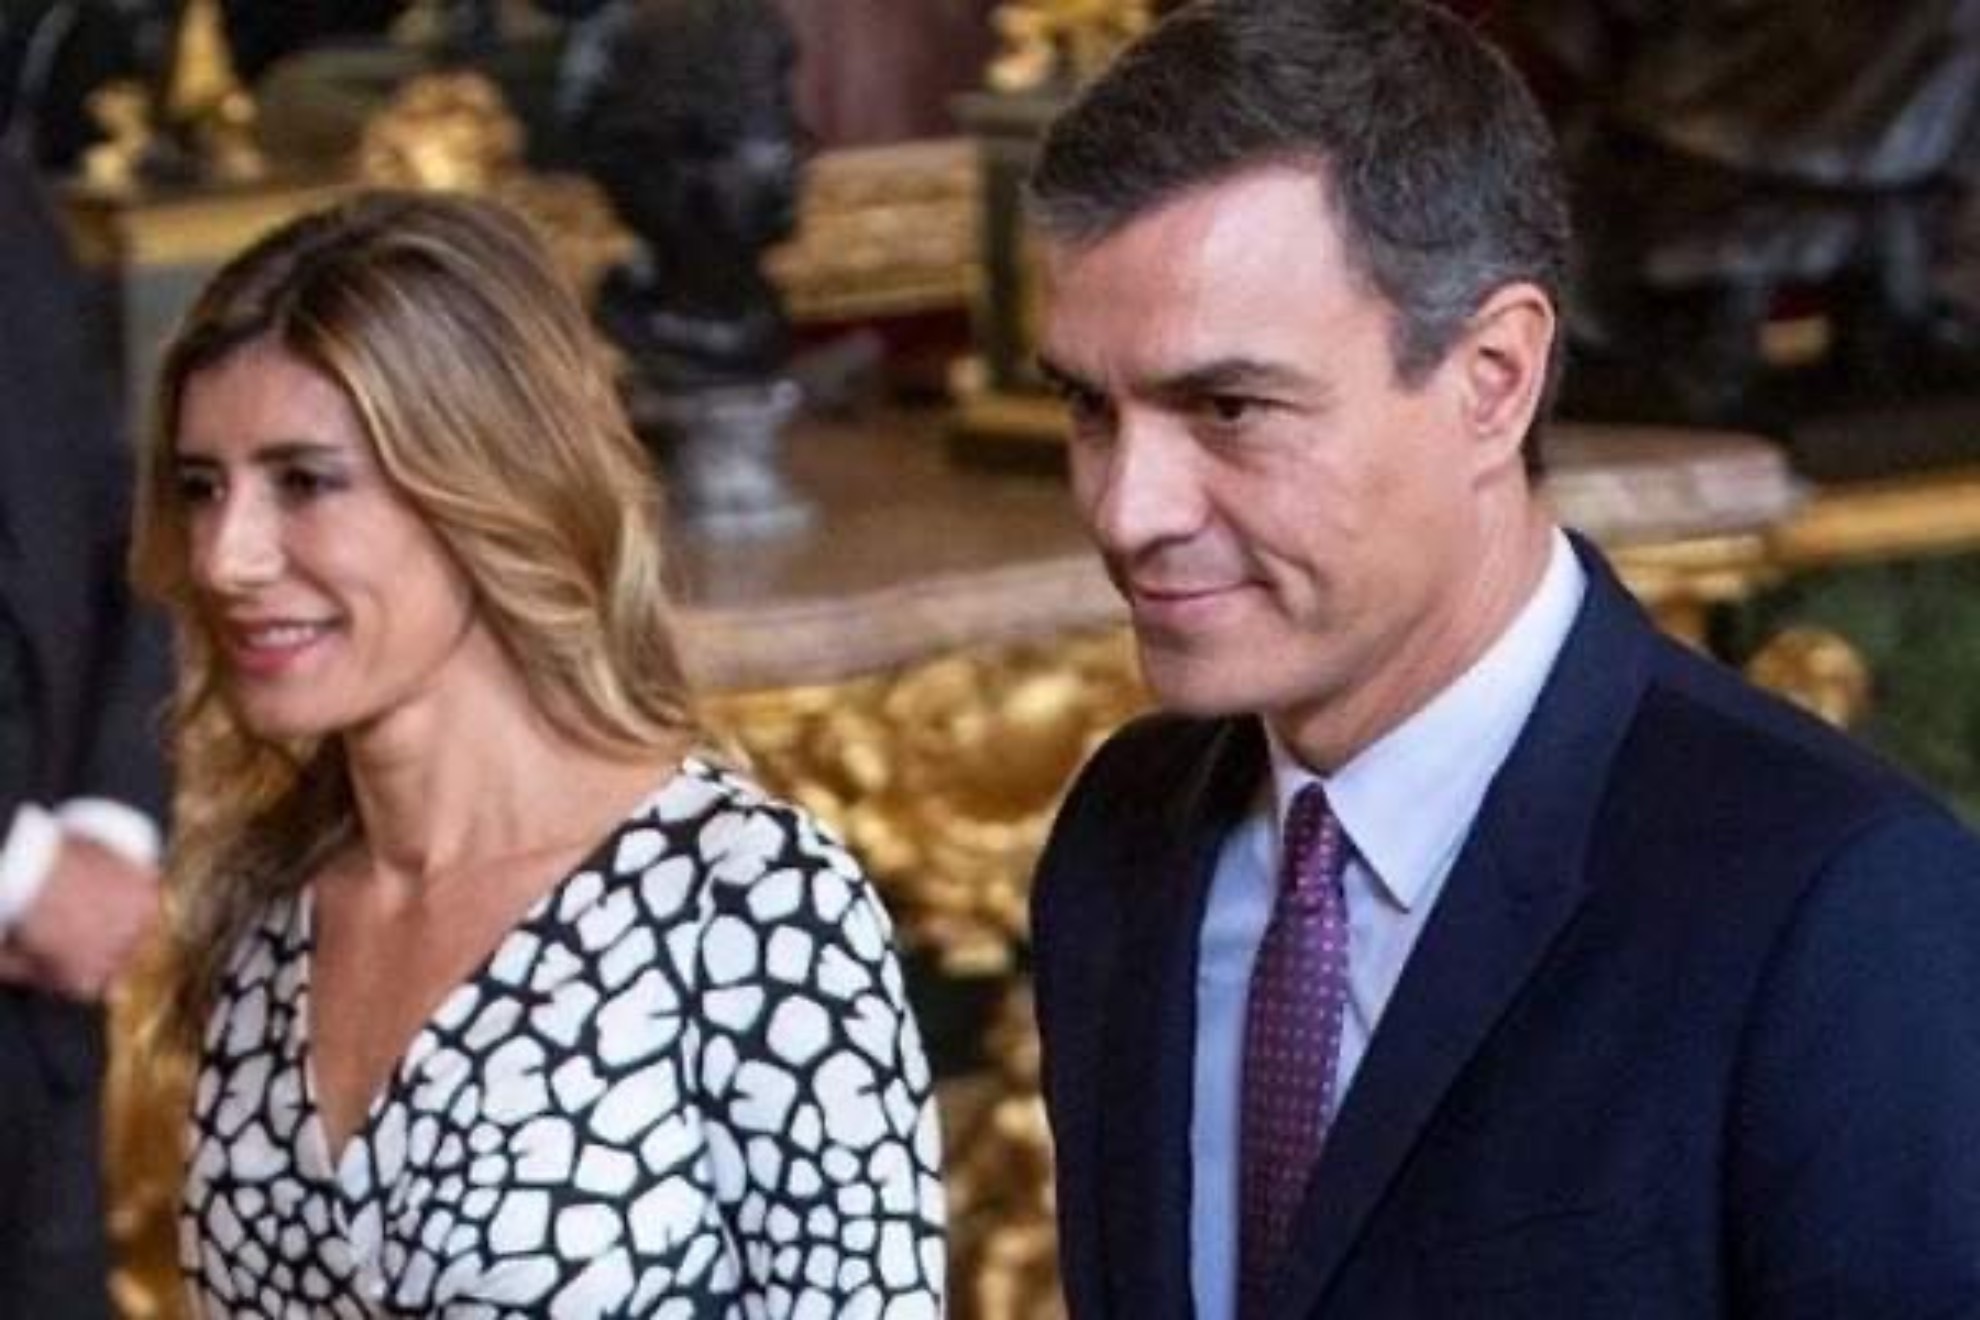 Cuntas hijas tiene Pedro Snchez, presidente del Gobierno y lder del PSOE